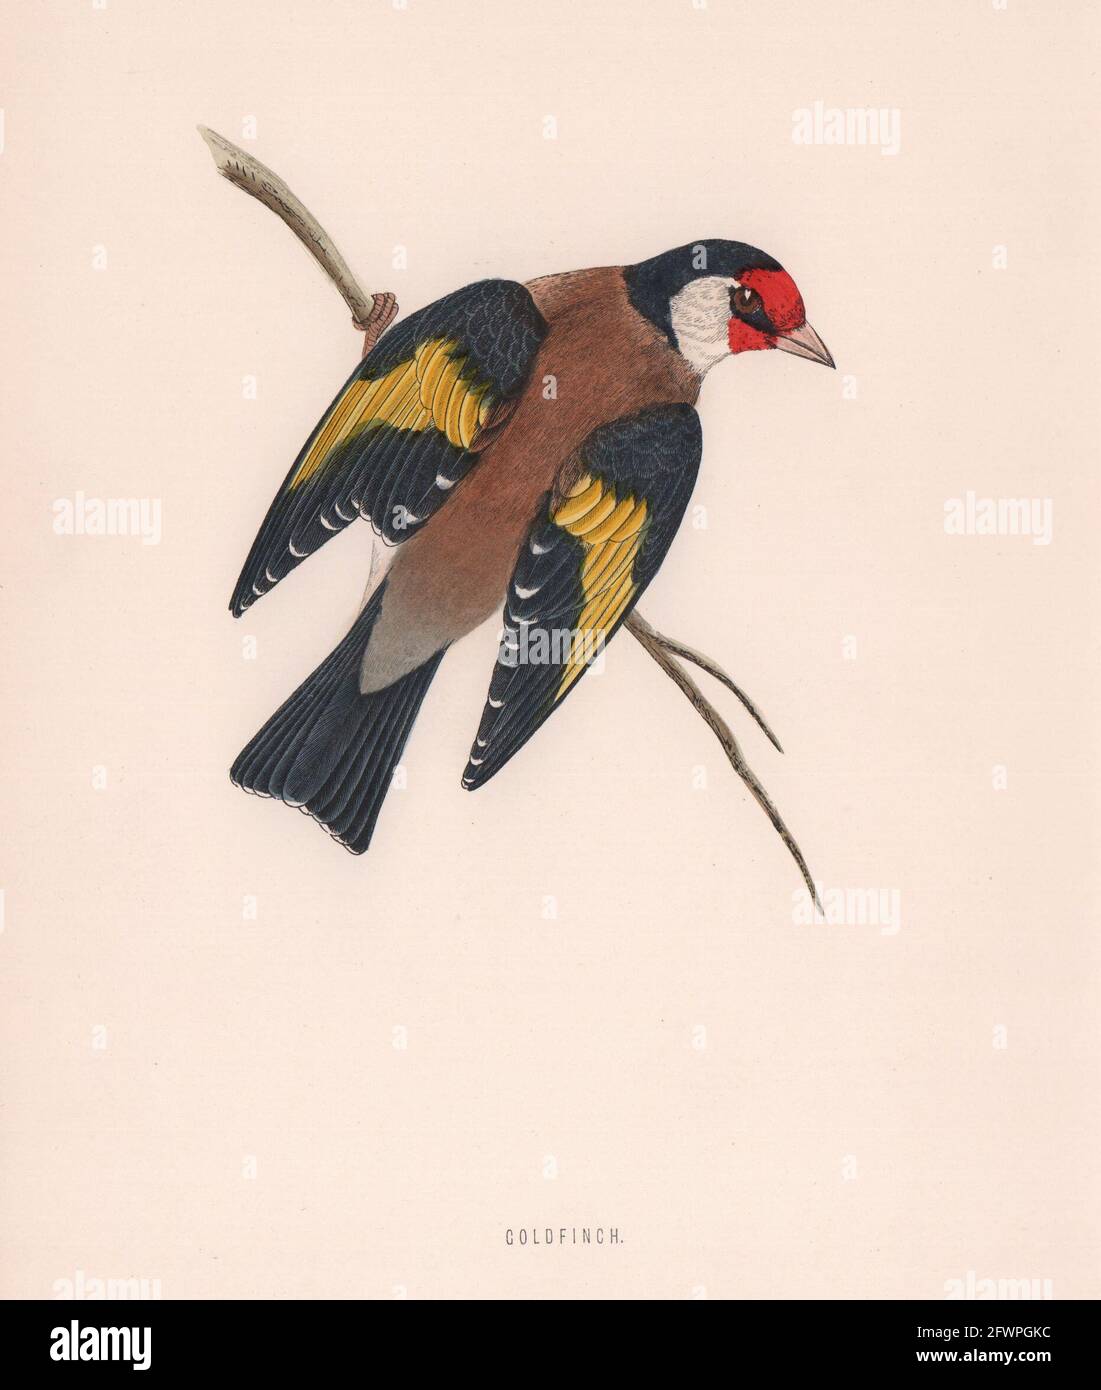 Goldfinch. Morris's British Birds. Estampado de colores antiguos 1870 Foto de stock